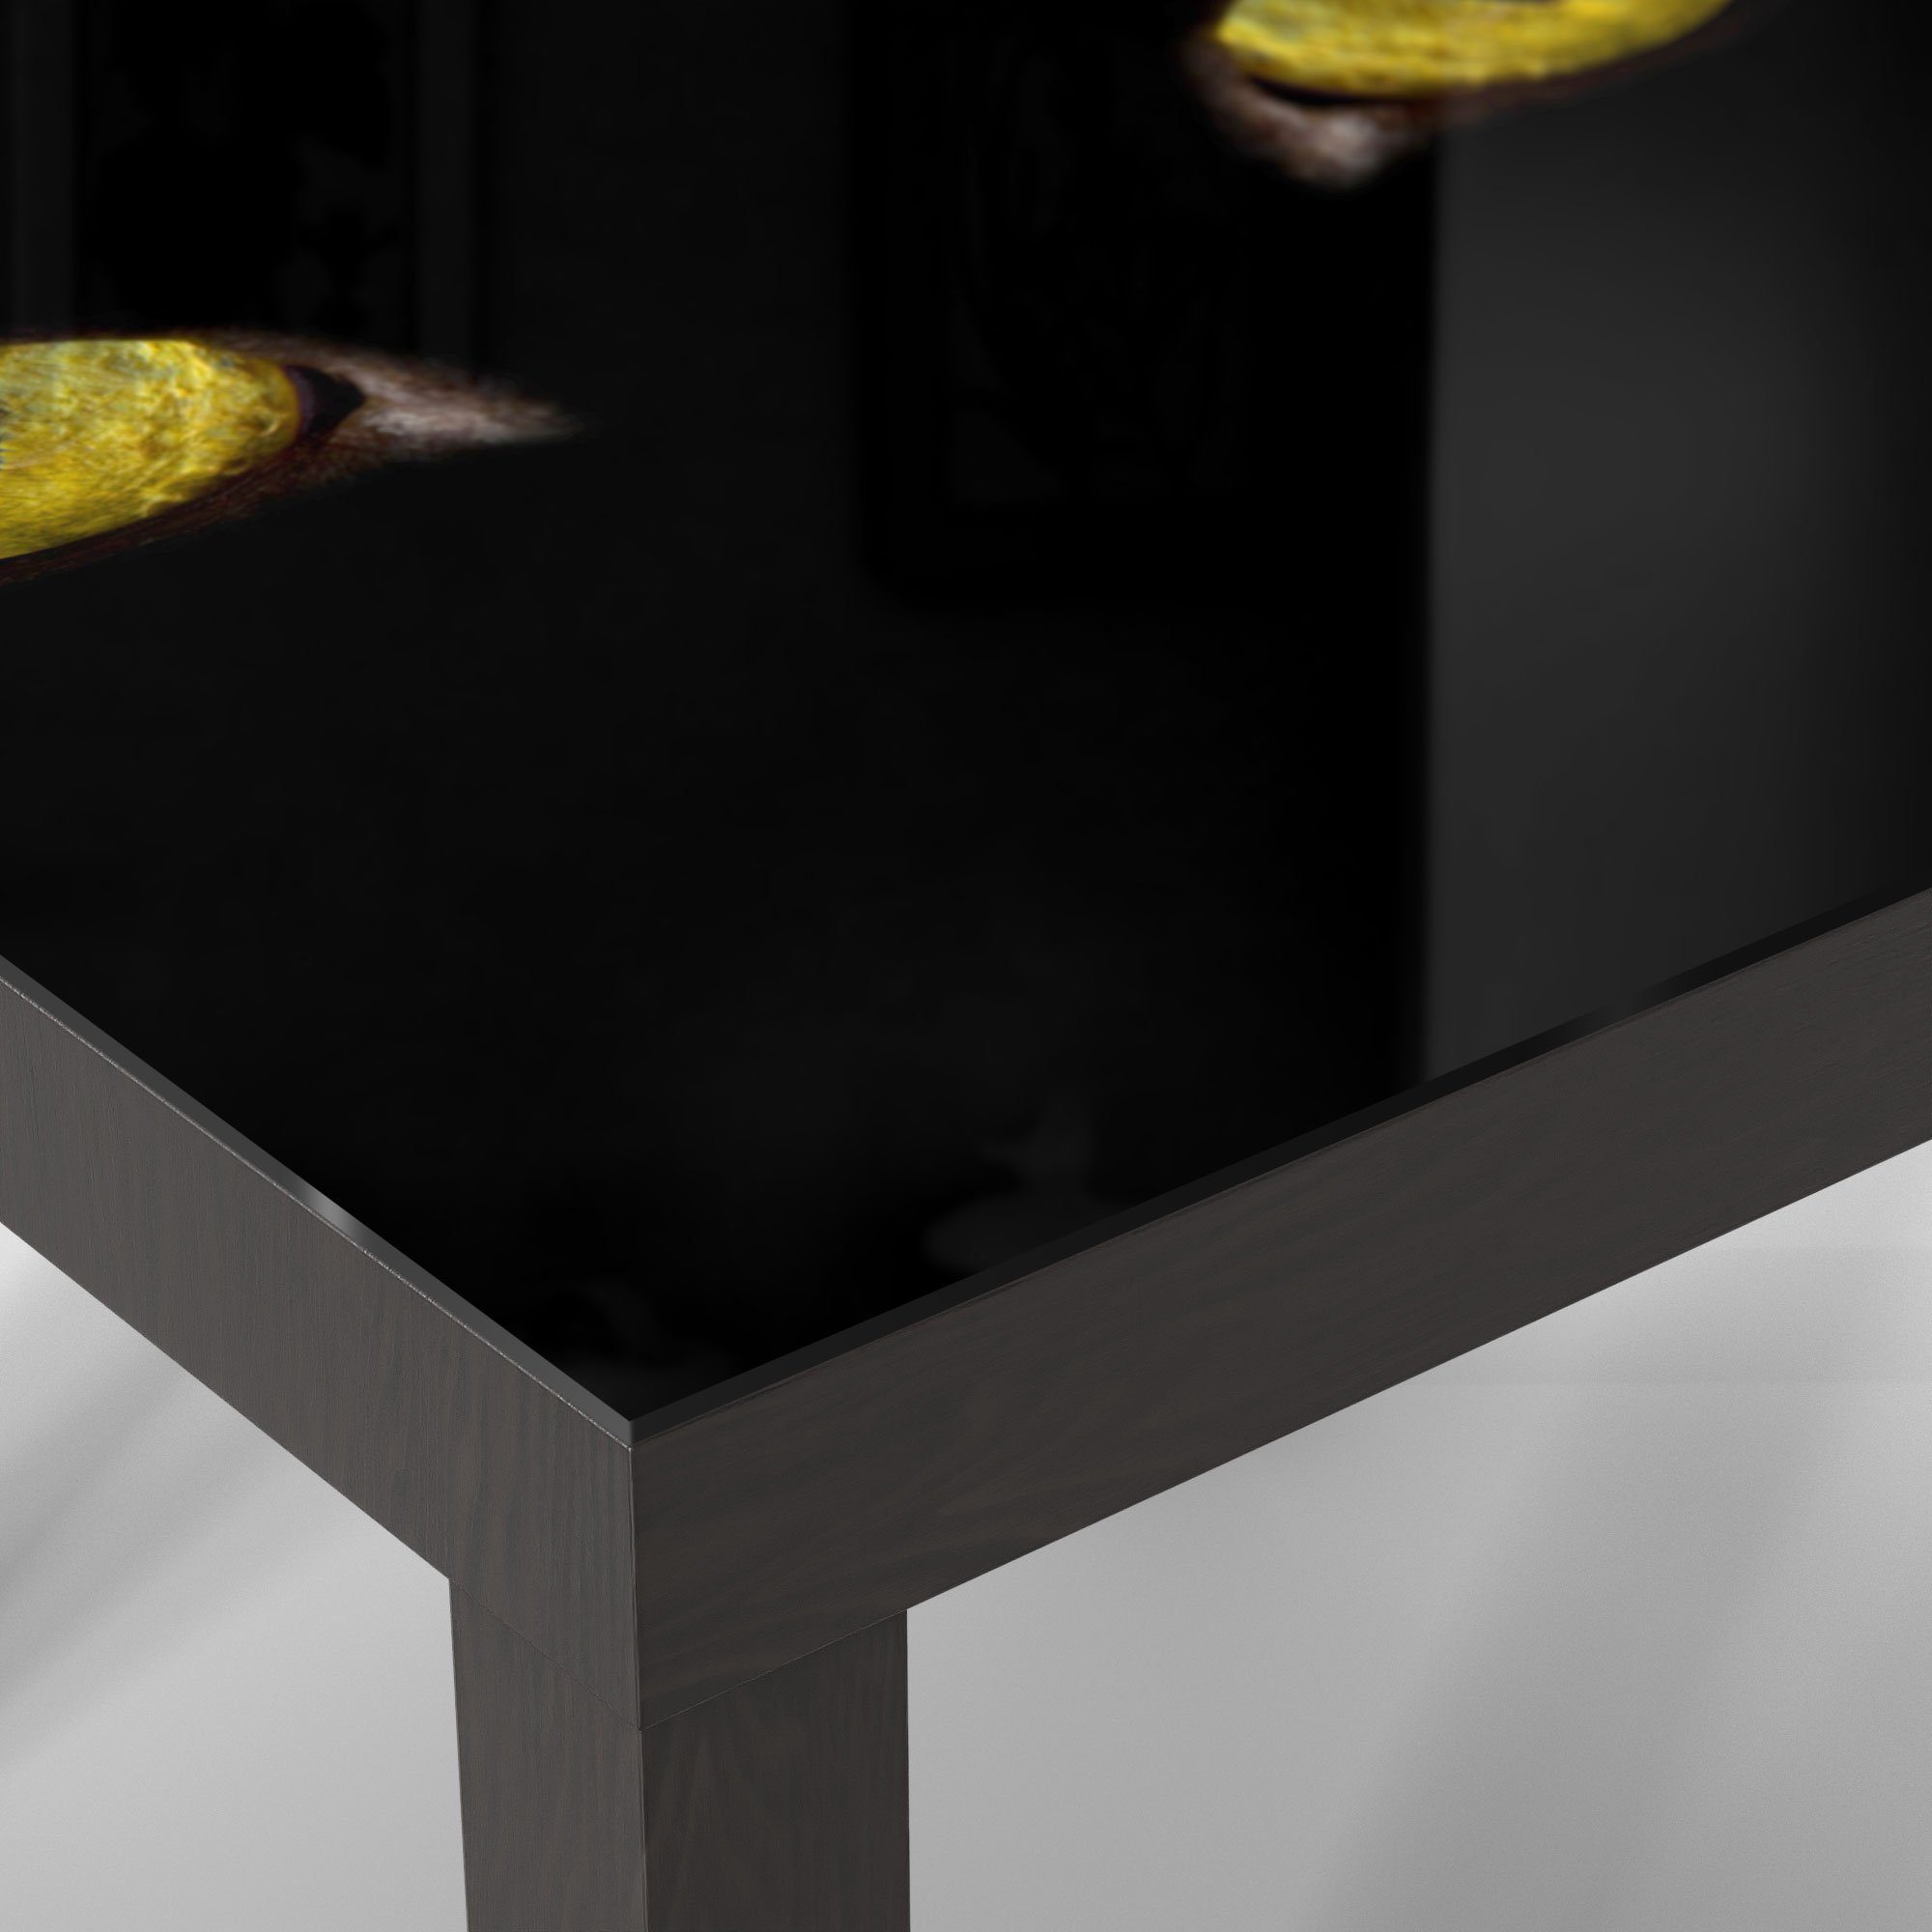 Katzenaugen', DEQORI Glas Beistelltisch Couchtisch 'Unheimliche Schwarz Glastisch modern